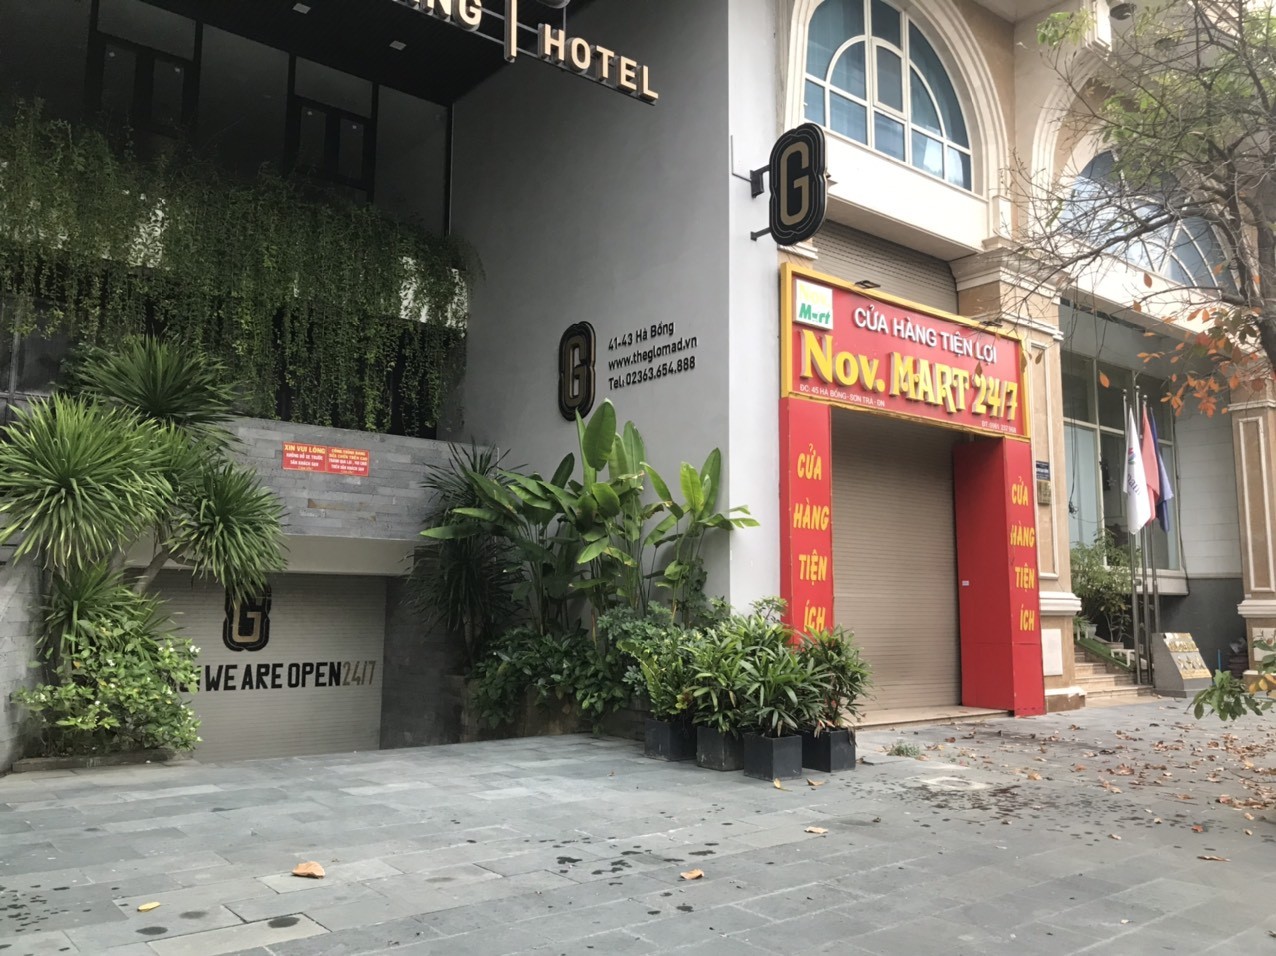 
Trên con phố Hà Bổng: một khách sạn, một cửa hàng tiện lợi, một khách sạn tiếp theo, tất cả đều vẫn chưa mở cửa trở lại.
